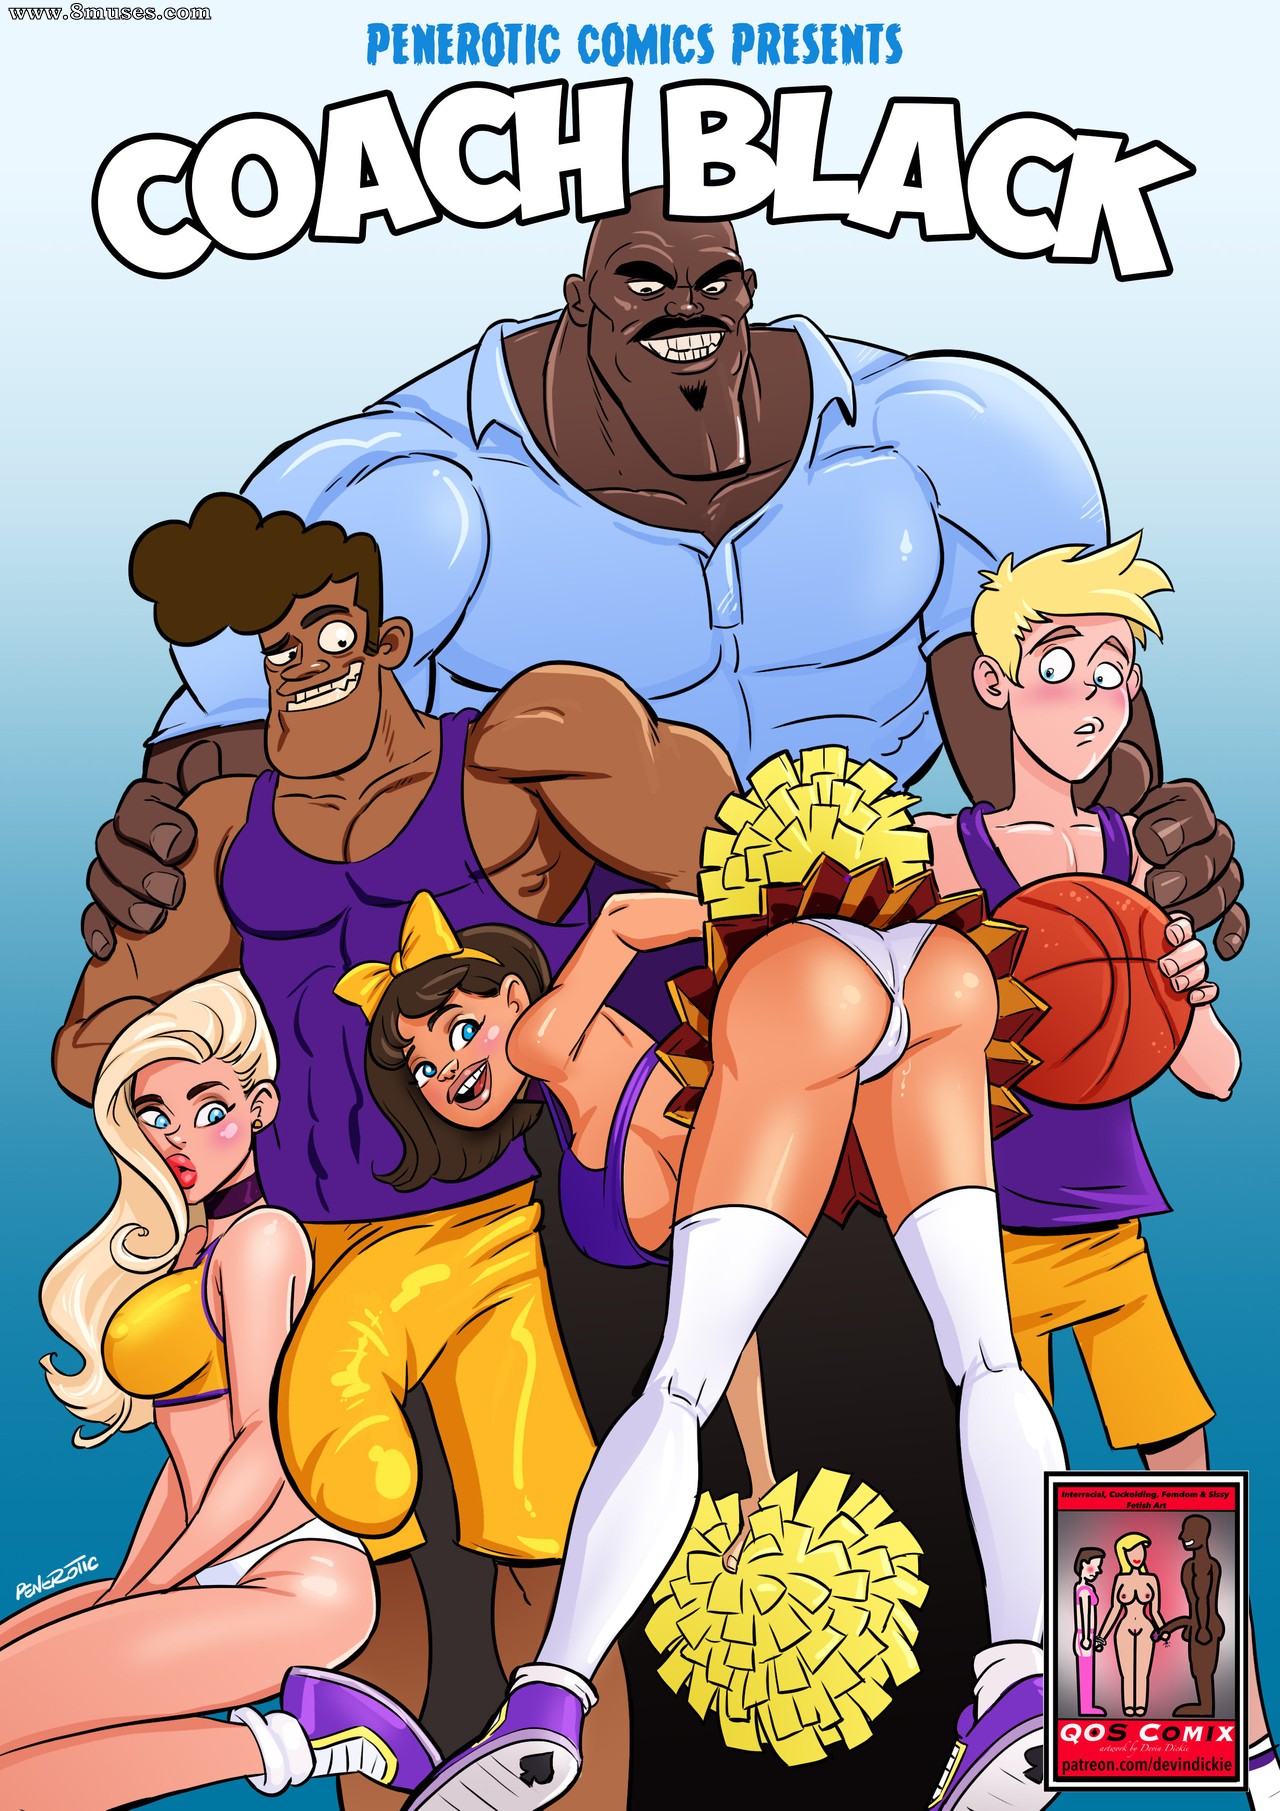 Coach Black Issue 1 - 8muses Comics - Sex Comics and Porn Cartoons